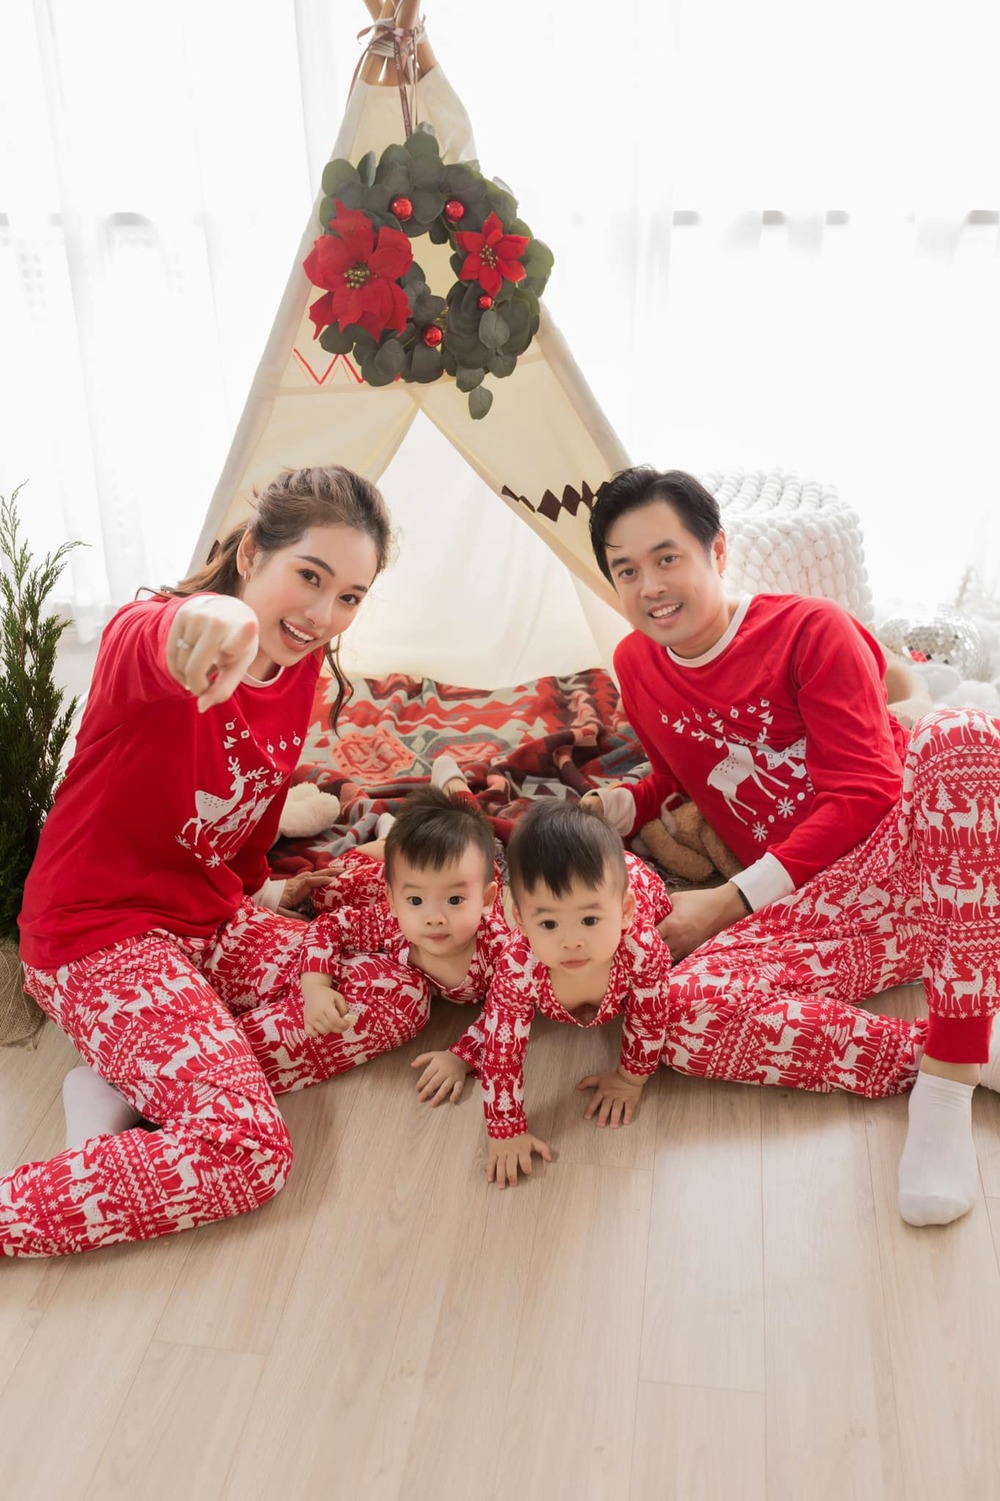   
Hình ảnh gia đình Dương Khắc Linh trong dịp Giáng sinh. - Tin sao Viet - Tin tuc sao Viet - Scandal sao Viet - Tin tuc cua Sao - Tin cua Sao